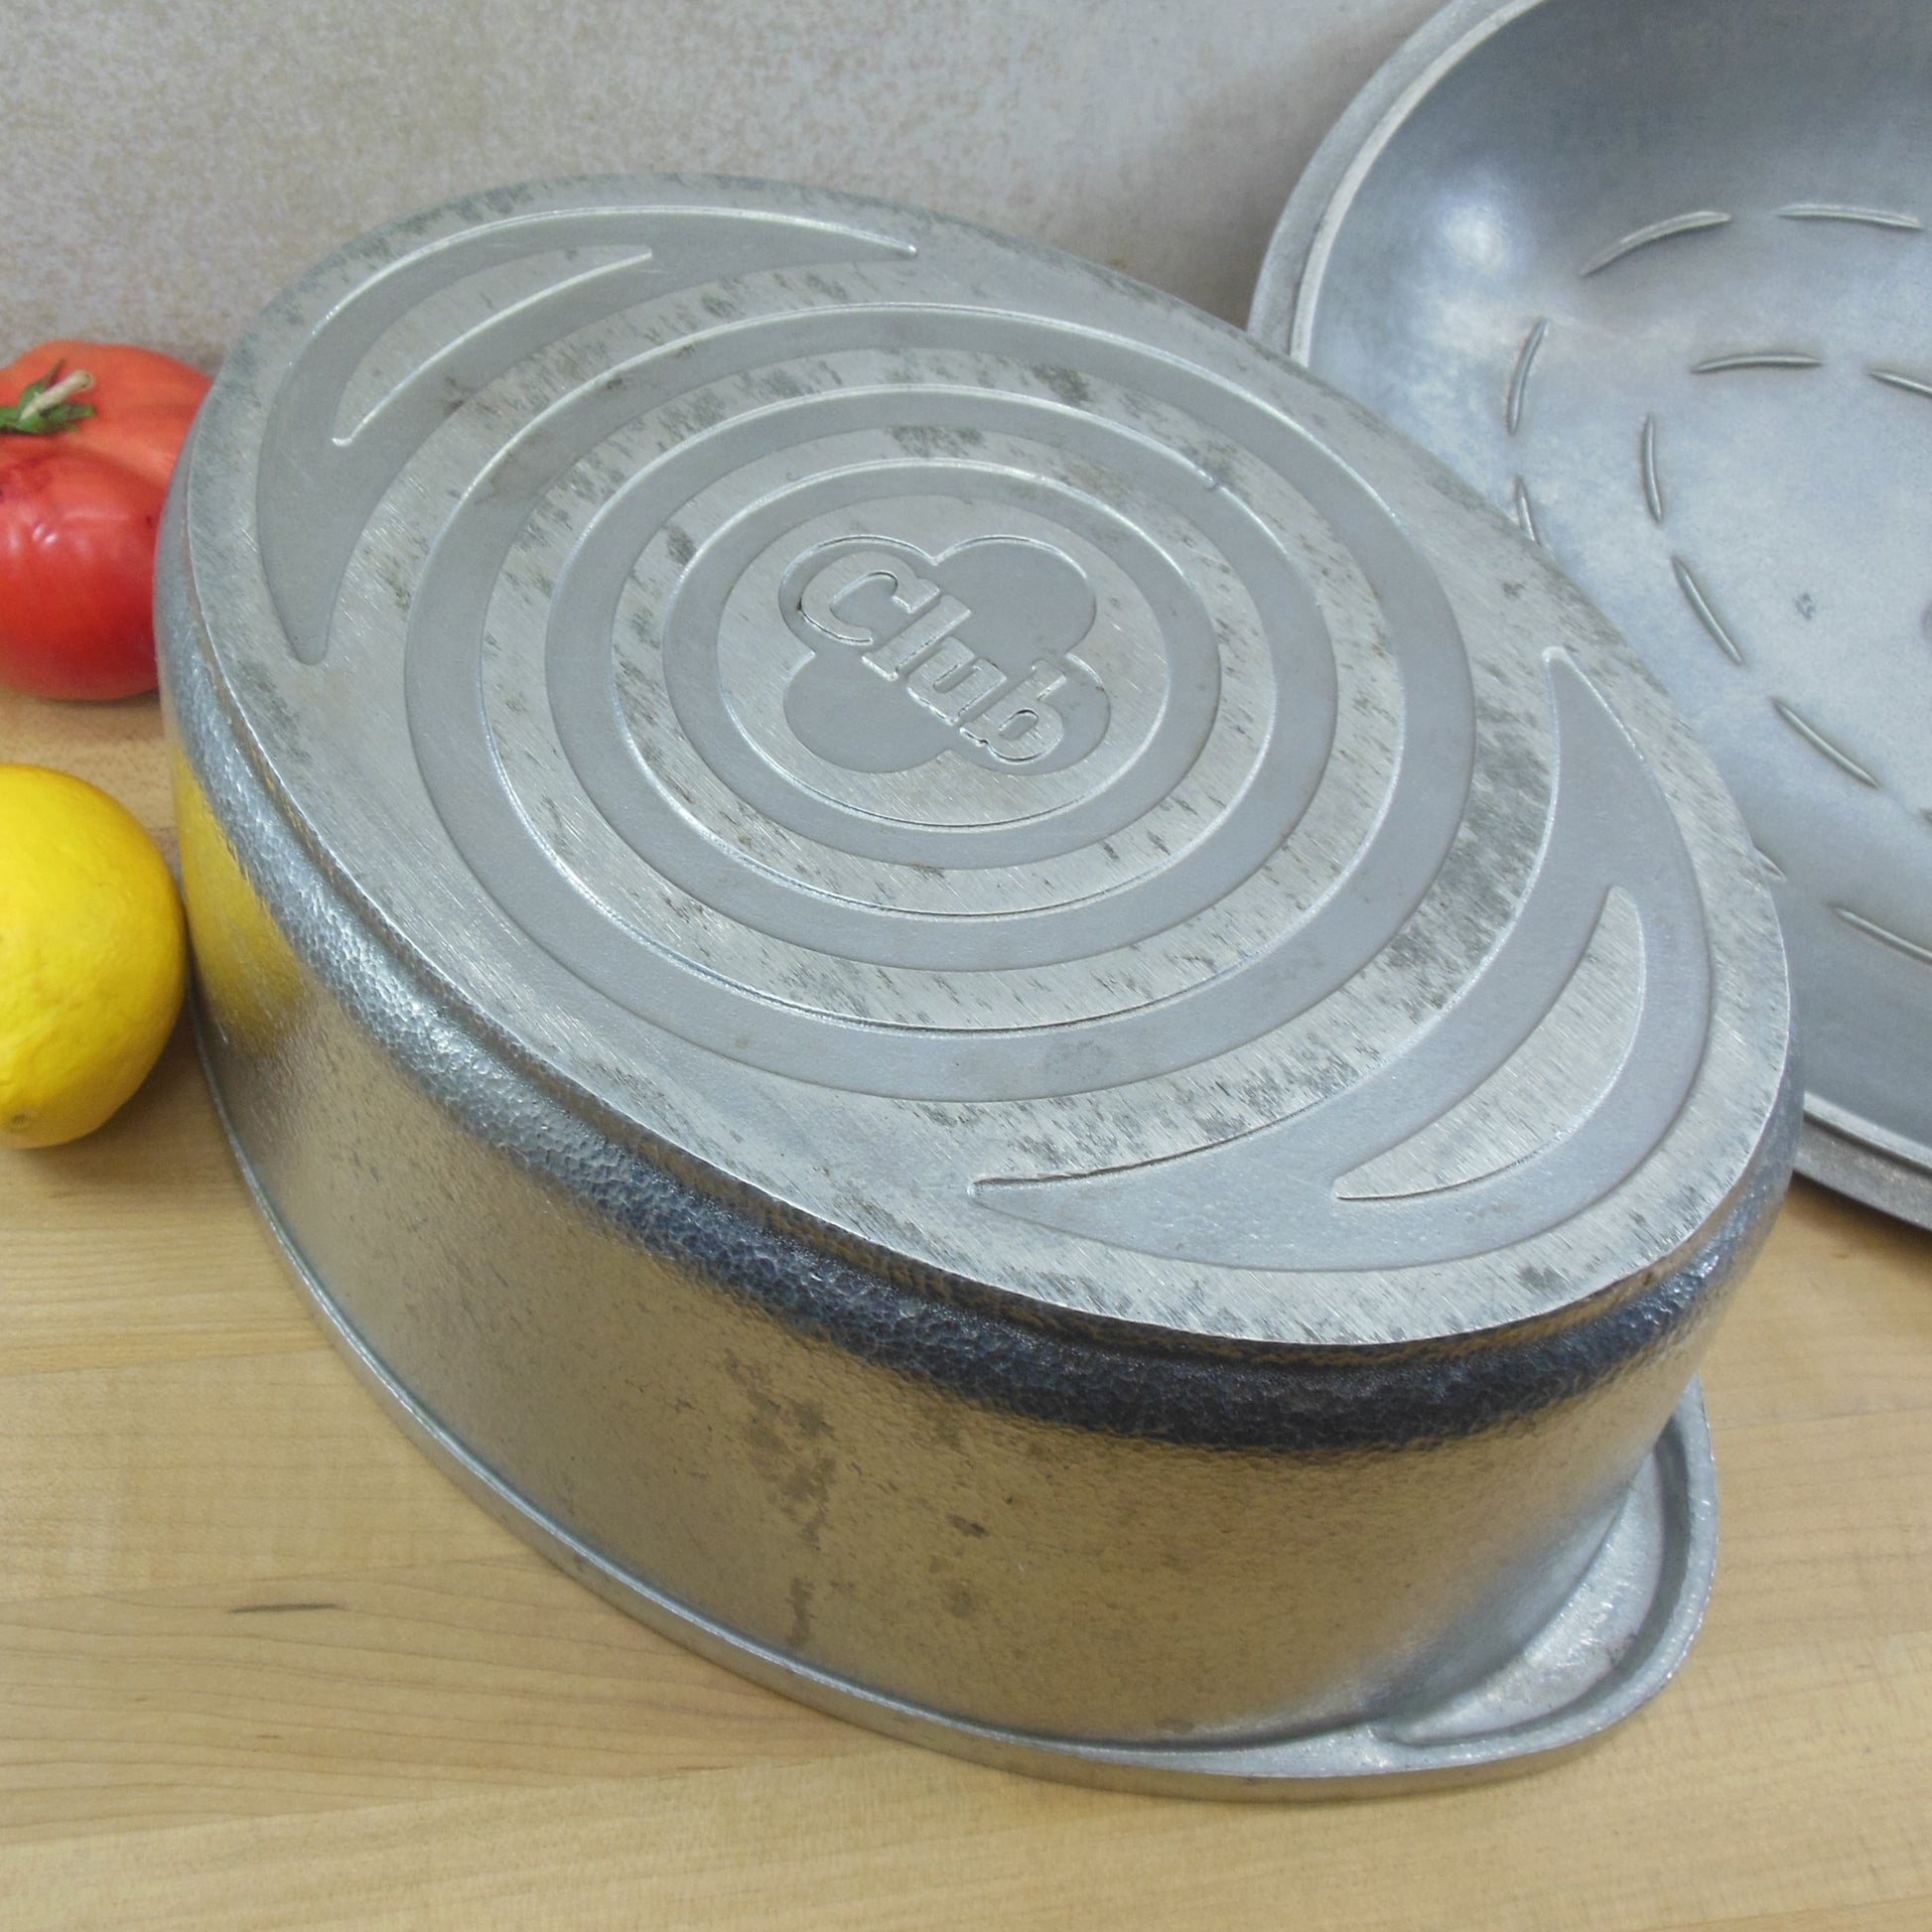 Club Aluminum Cookware Hammercraft 6 Quart Oval Roaster Pot